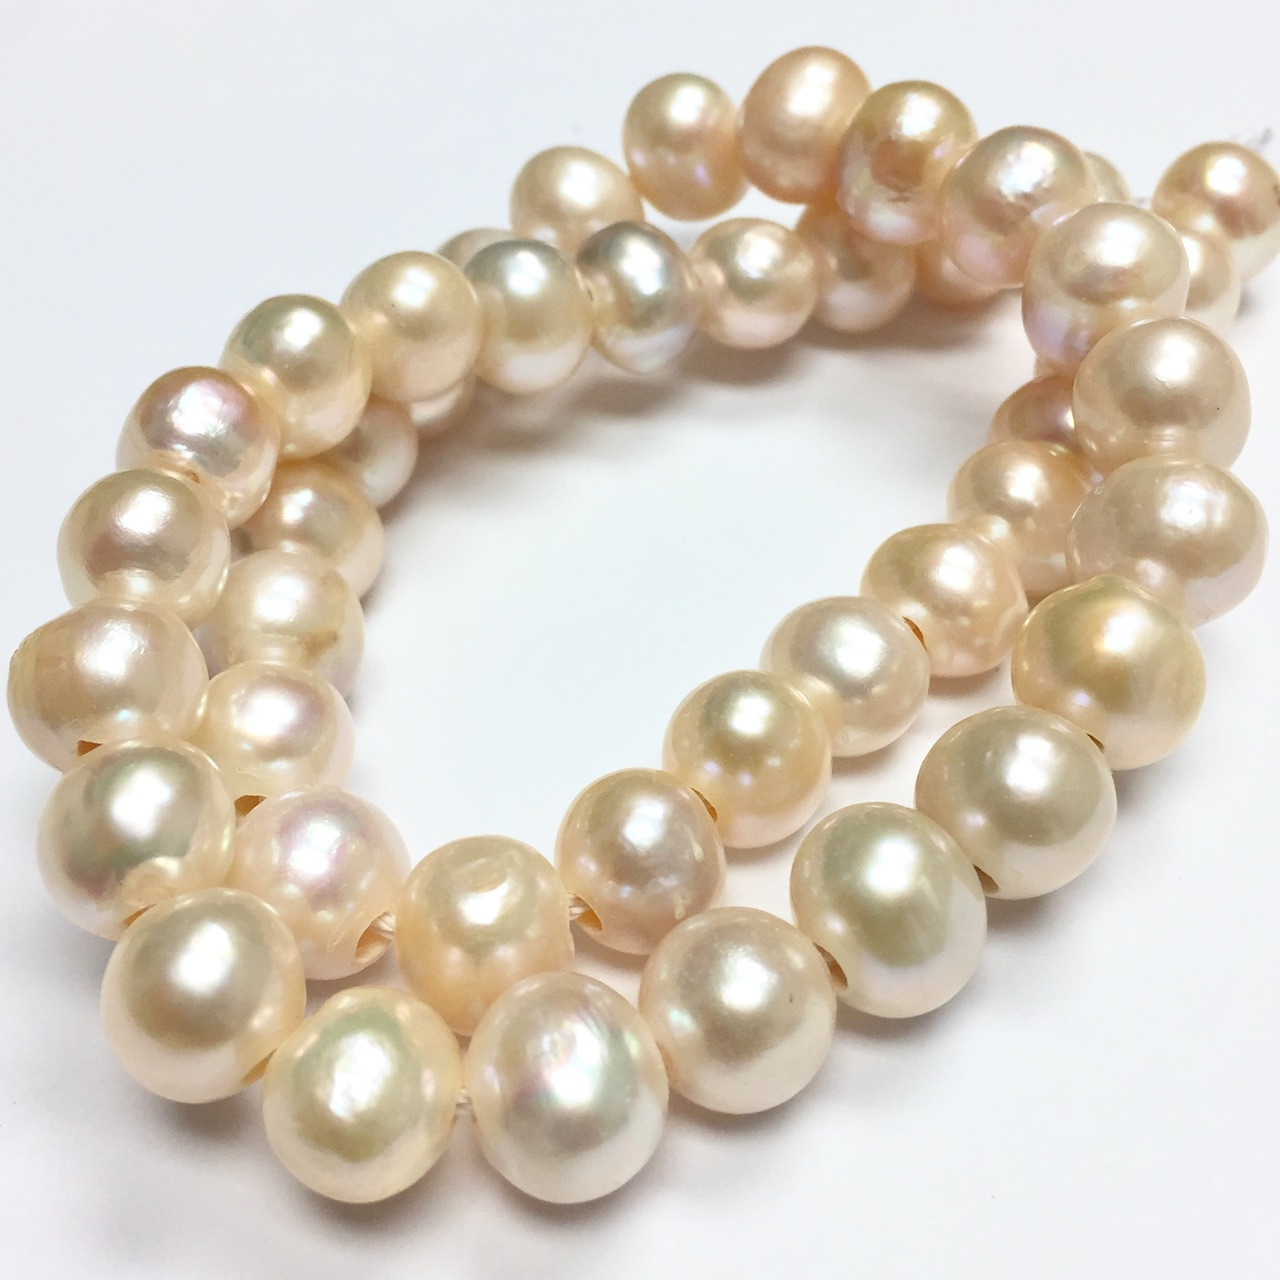 Large Holed Freshwater Potato Pearl Beads